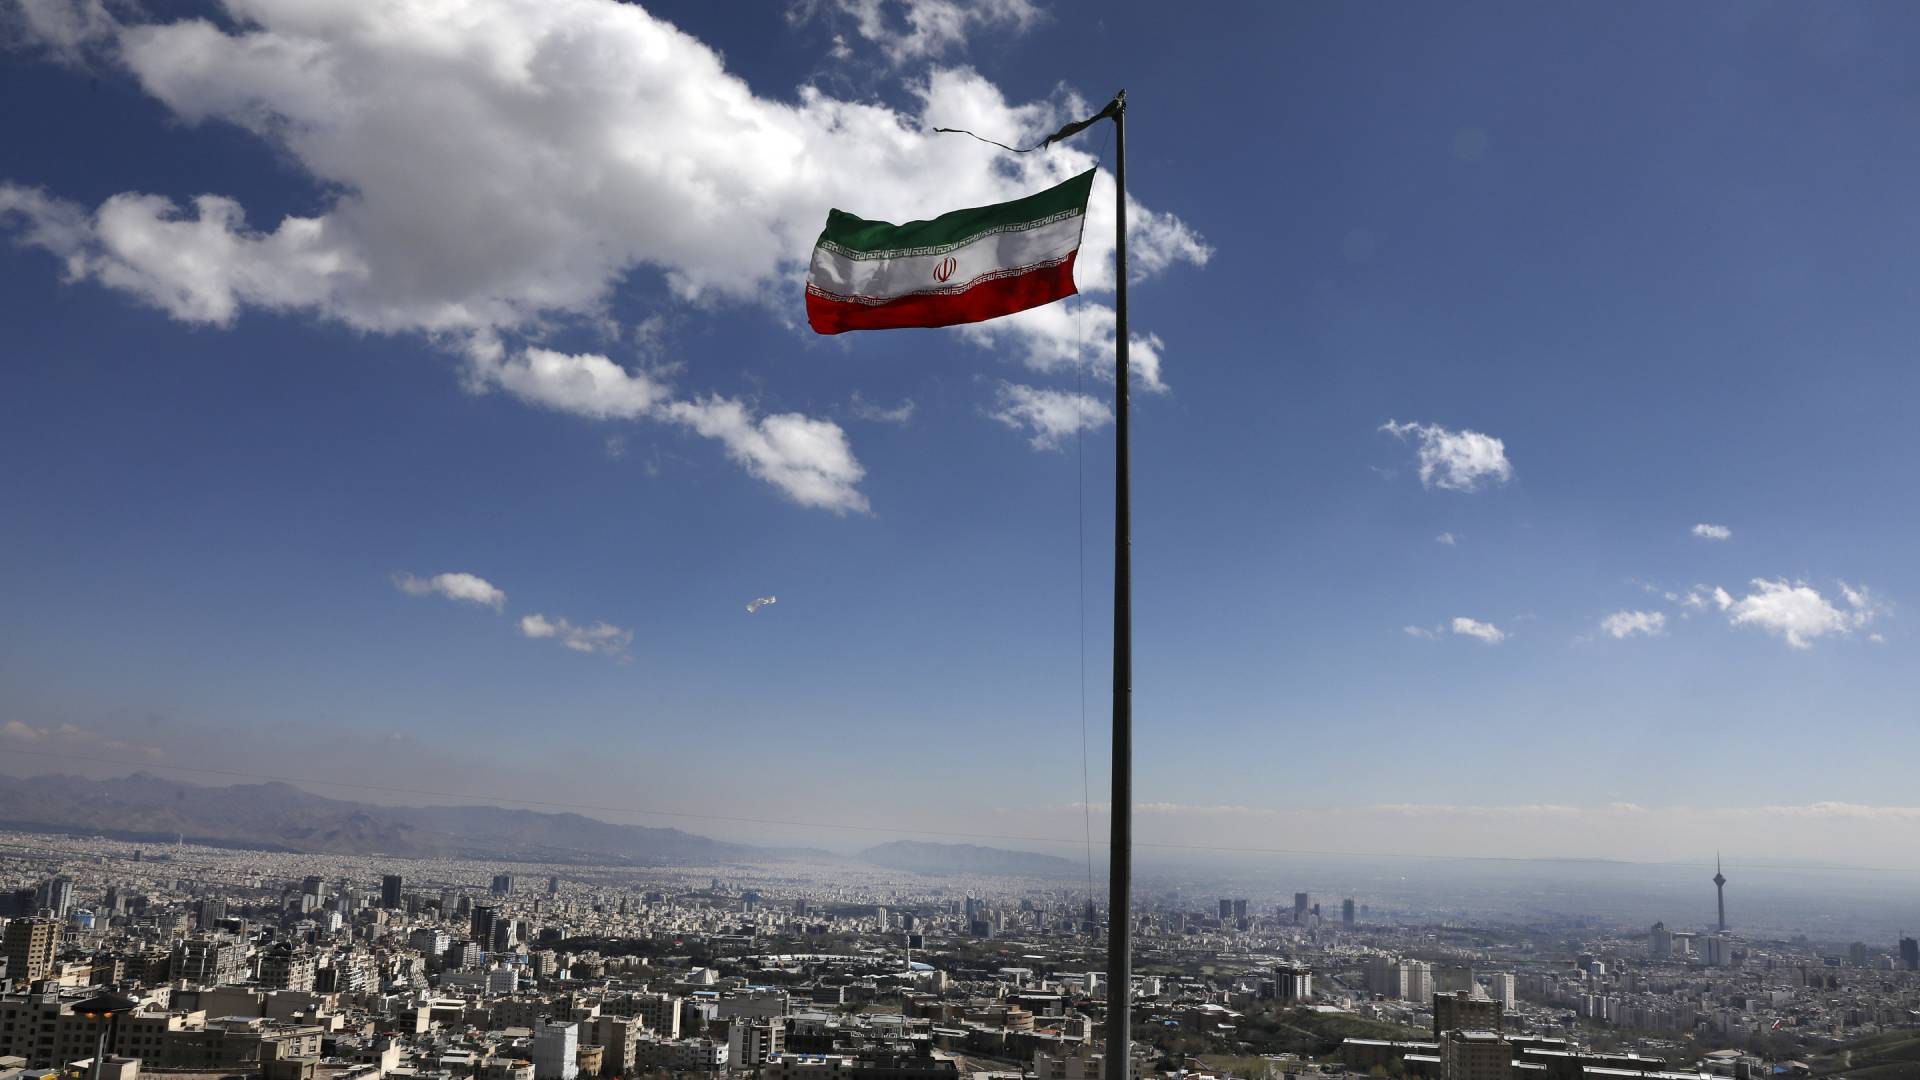 Αμίρ Σαΐντ Ιραβανί, πρέσβης του Ιράν στον ΟΗΕ: «Θα ανταποδώσουμε οποιαδήποτε επίθεση των ΗΠΑ»